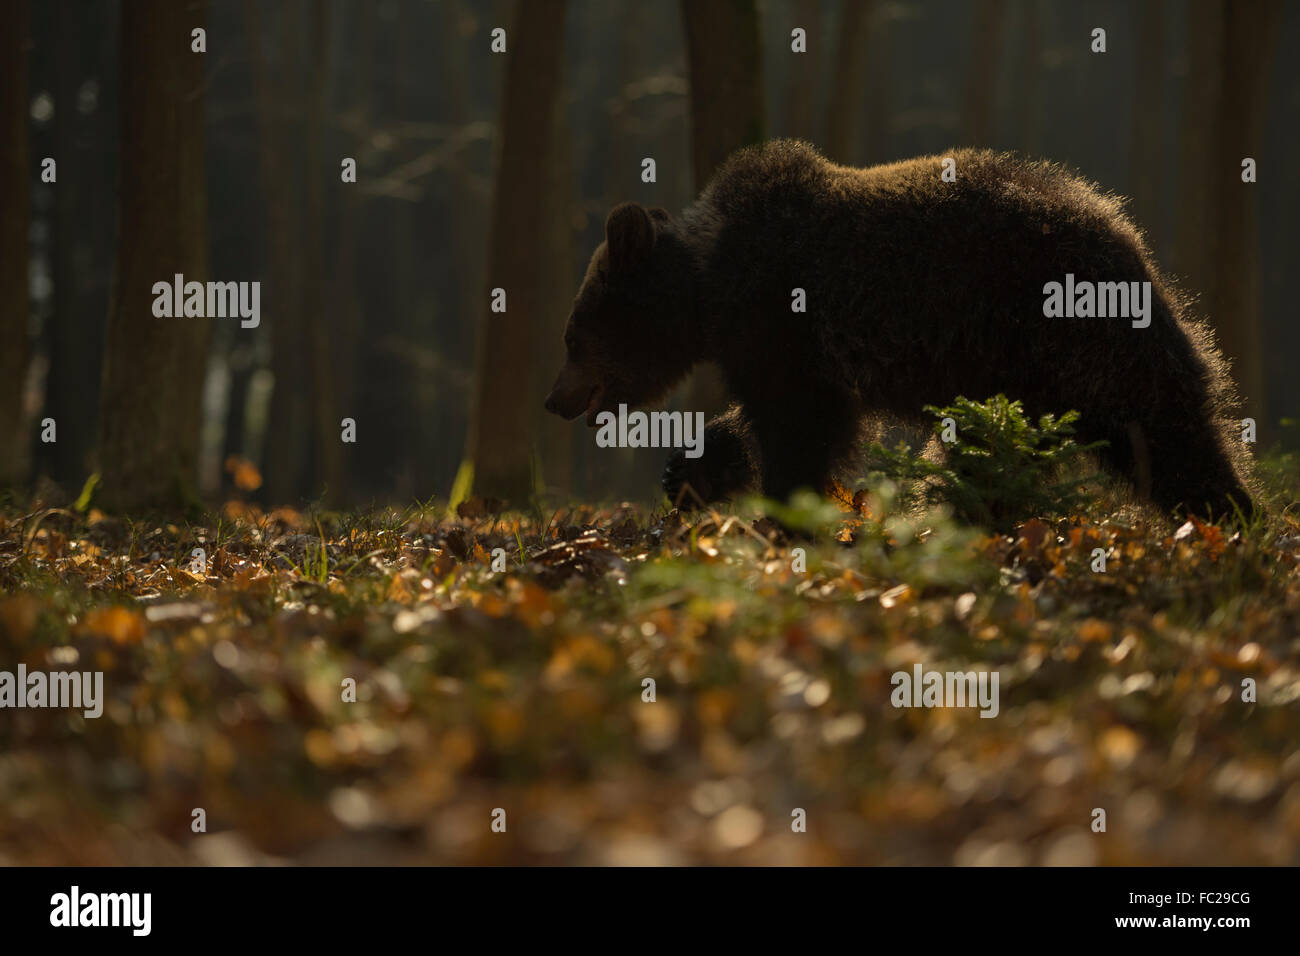 European Brown Bear / Europaeischer Braunbaer ( Ursus arctos ) walks through a natural forest, backlit, mysterious atmosphere. Stock Photo